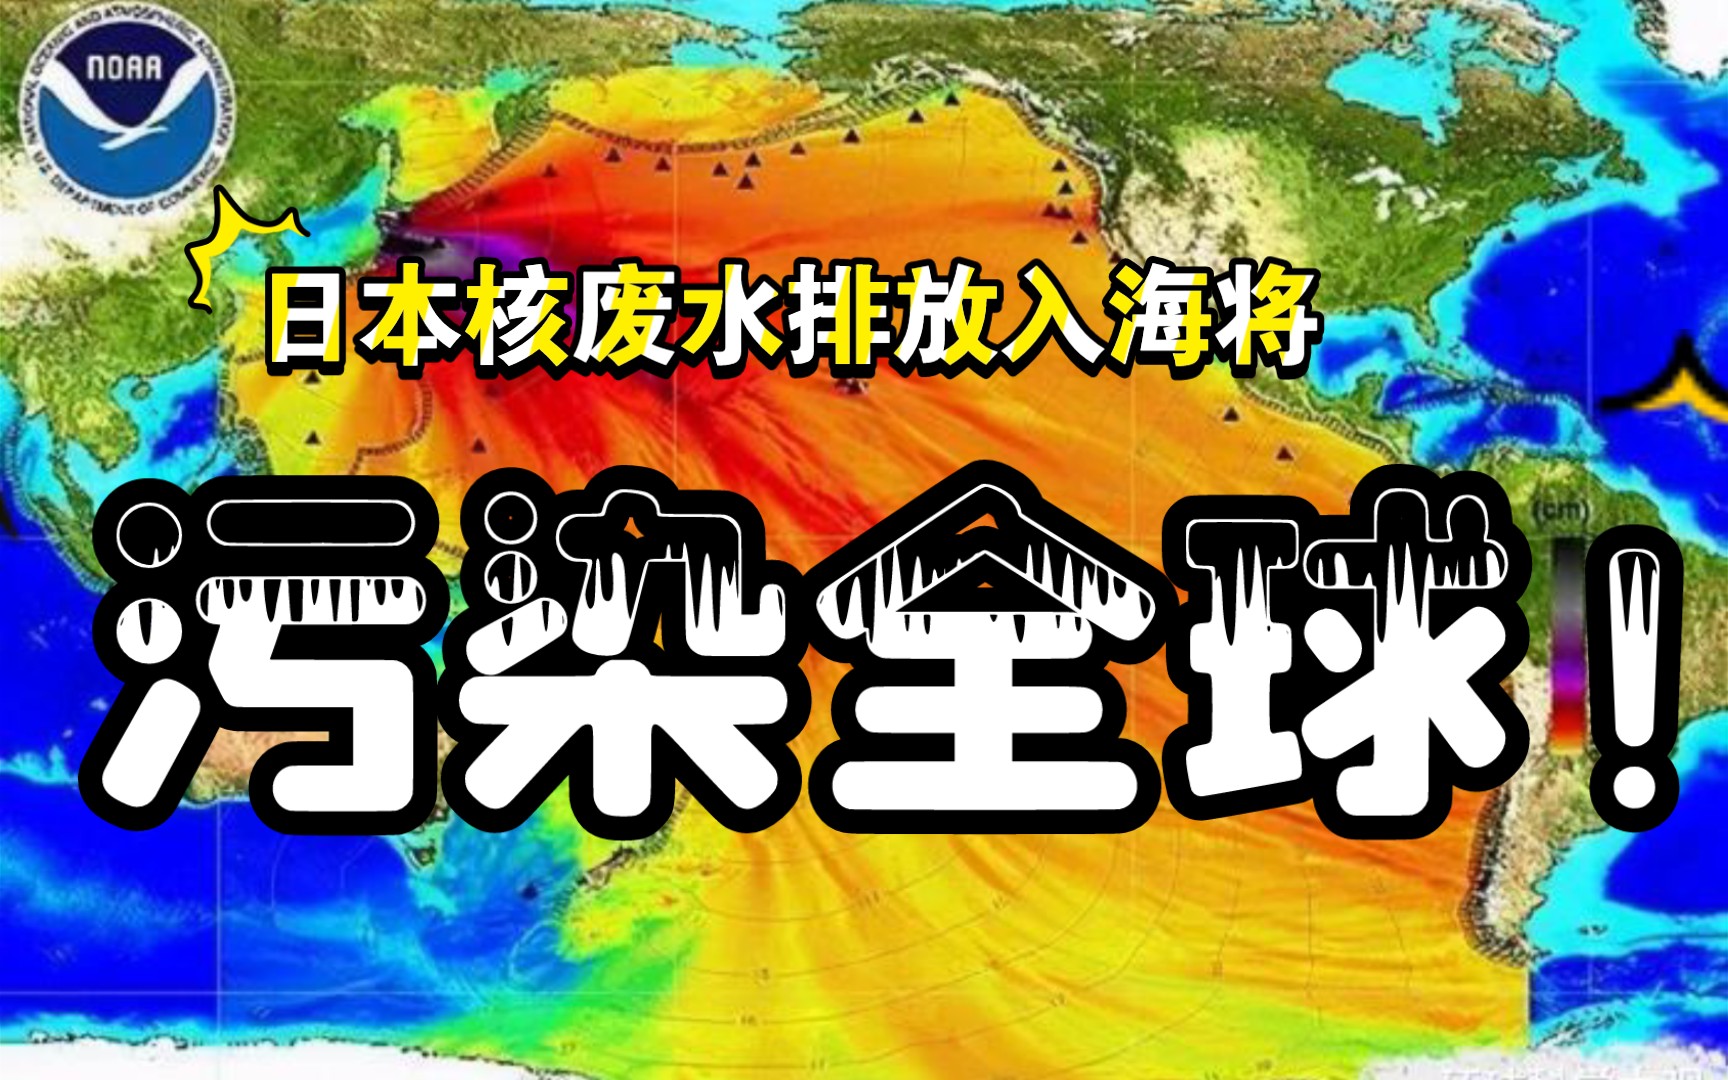 知识分享官第二期:日本核废水排放入海将污染全球!